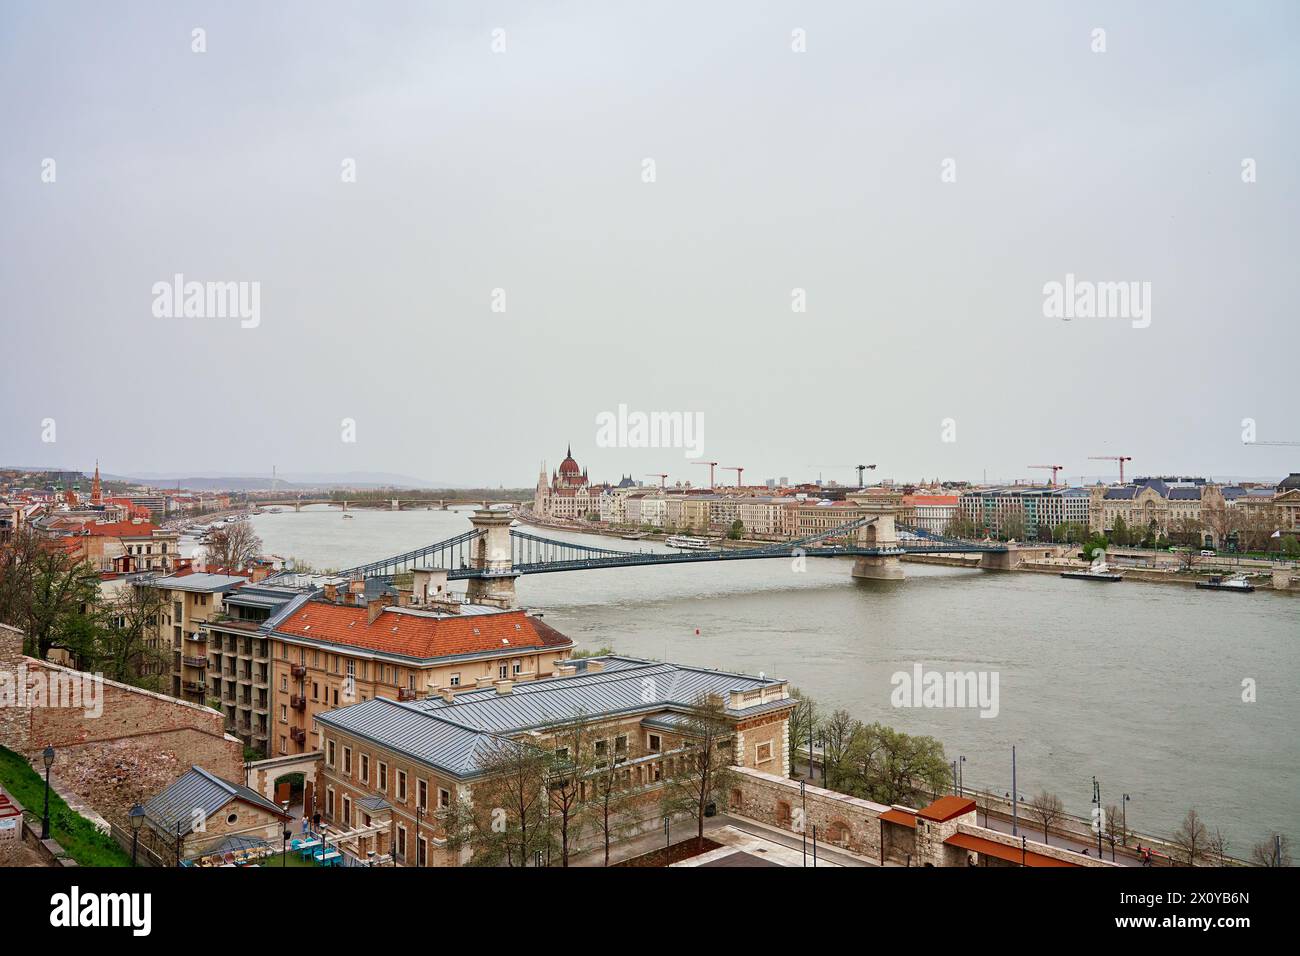 Vista panoramica sullo skyline di Budapest con il Ponte delle catene lungo il Danubio. Architettura della capitale ungherese con edifici storici e famo Foto Stock